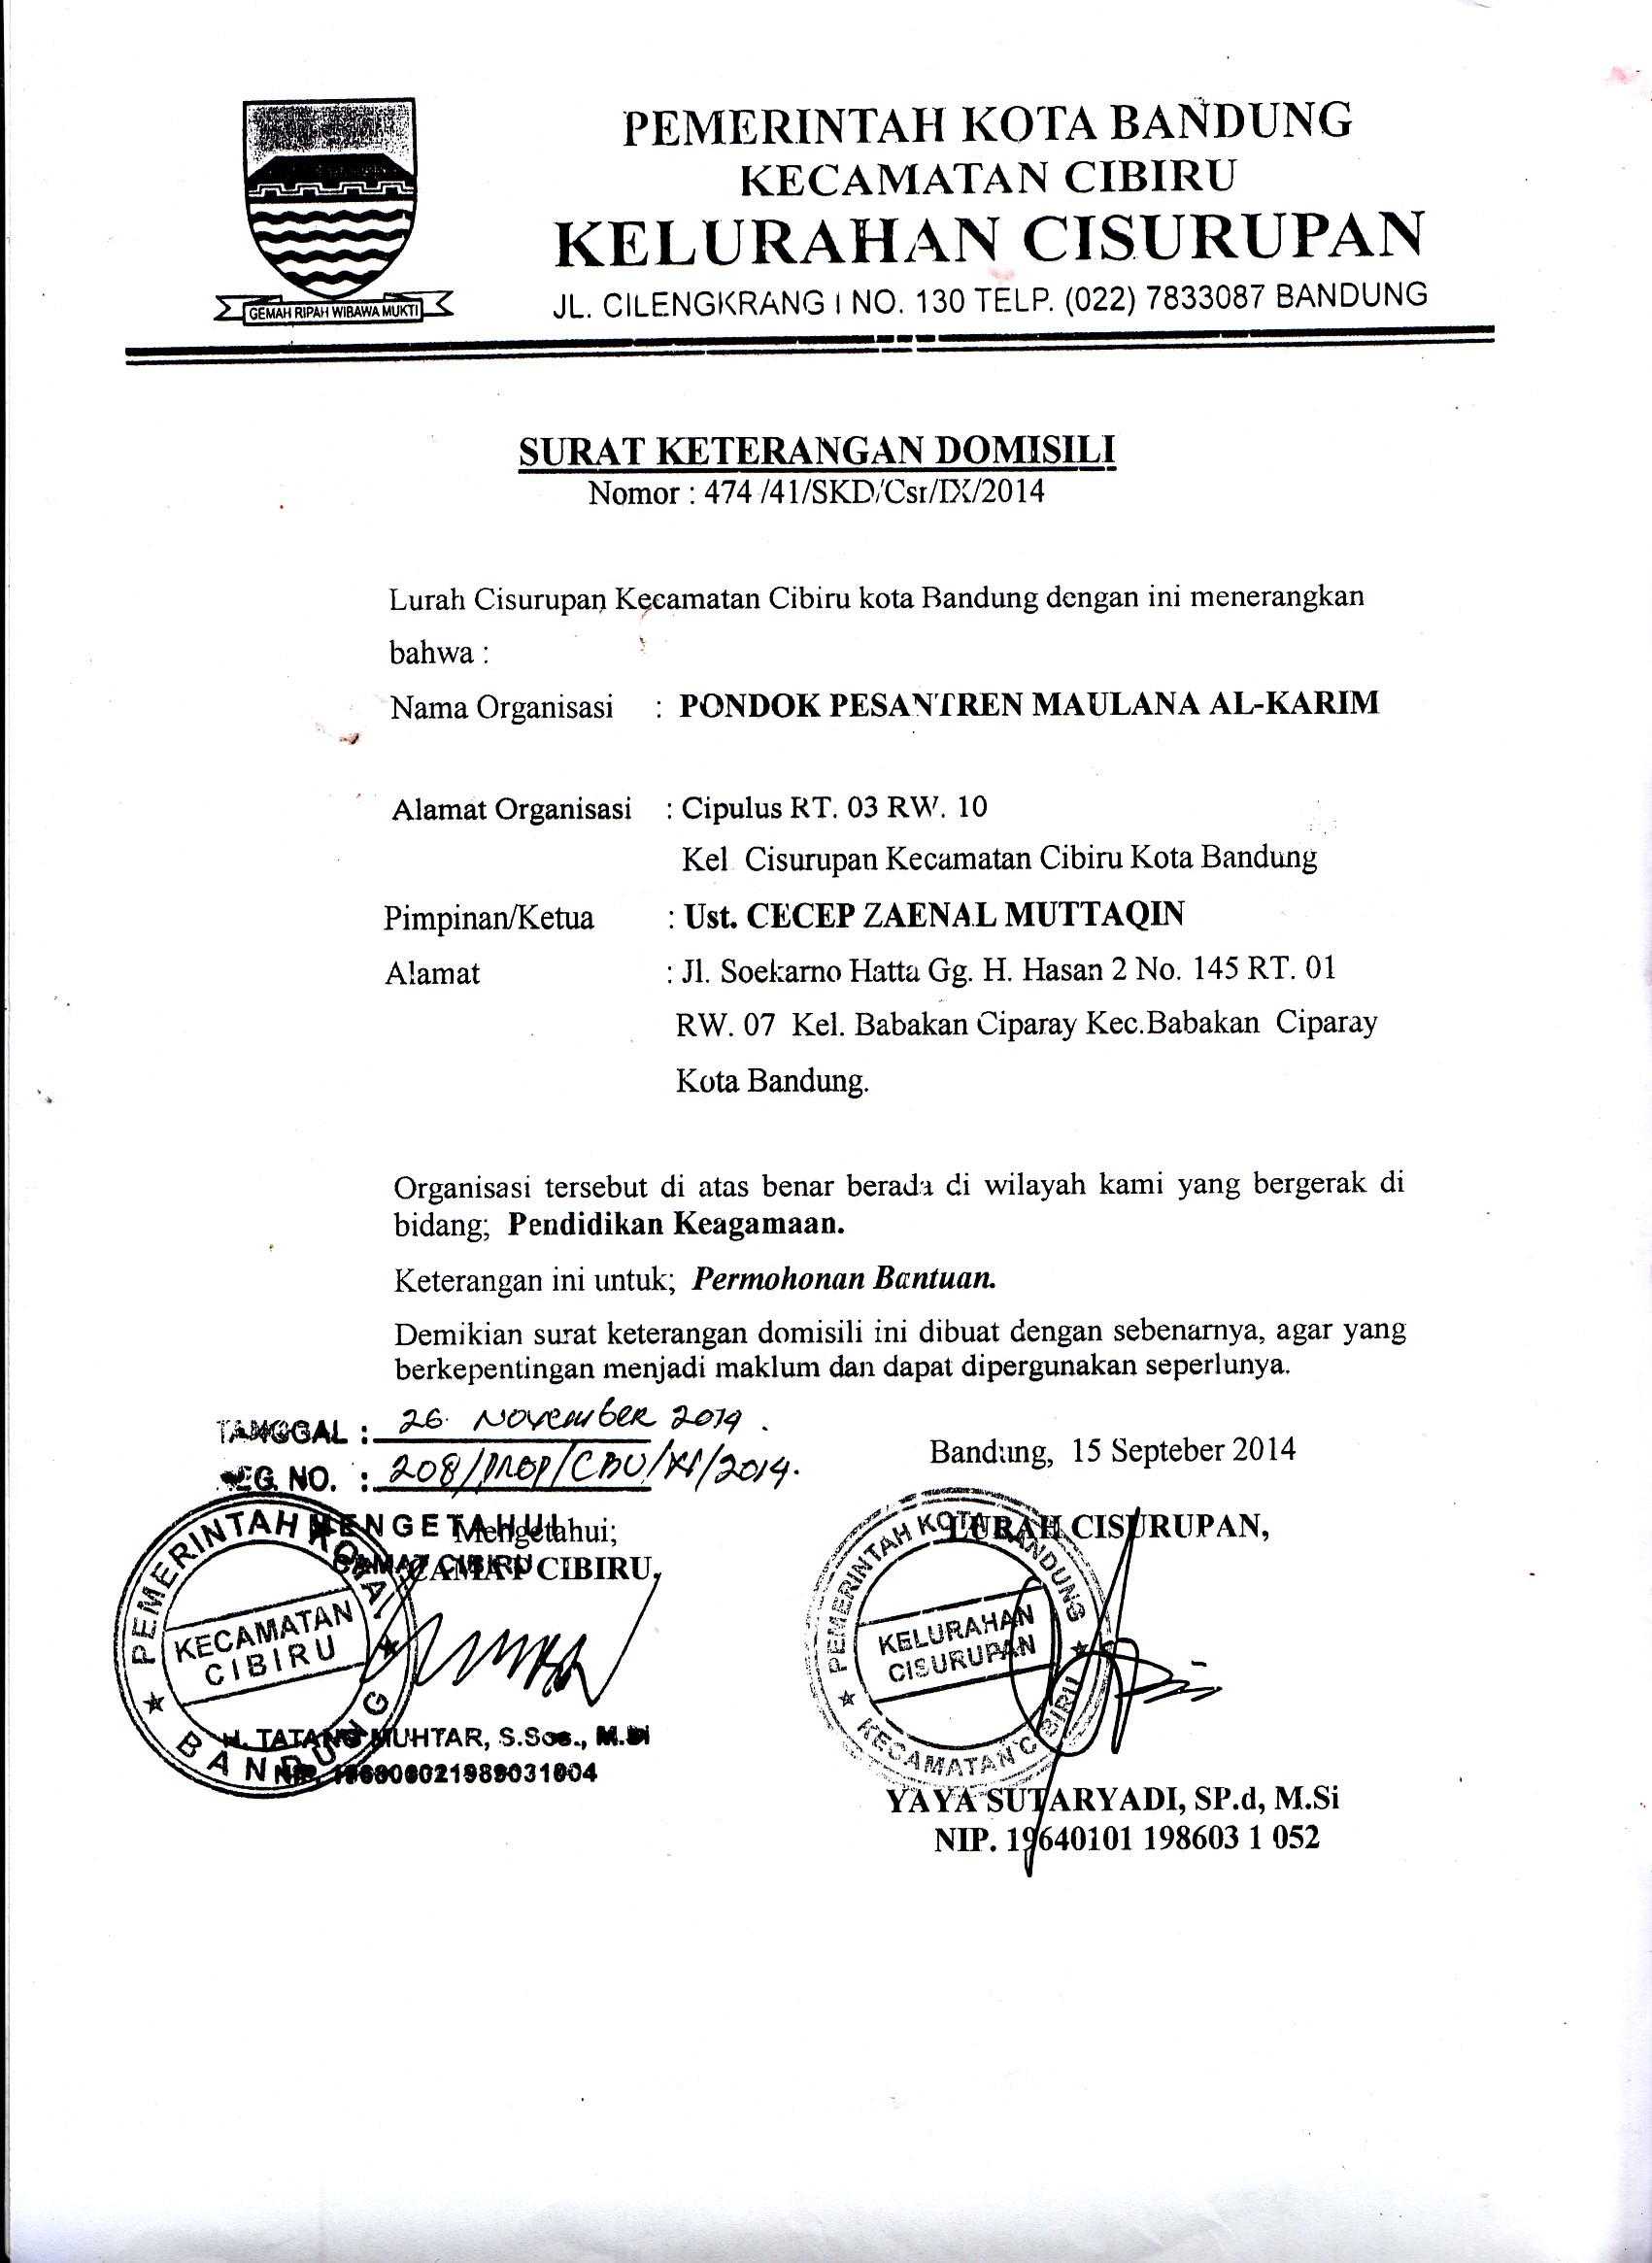 Detail Surat Domisili Bandung Nomer 16